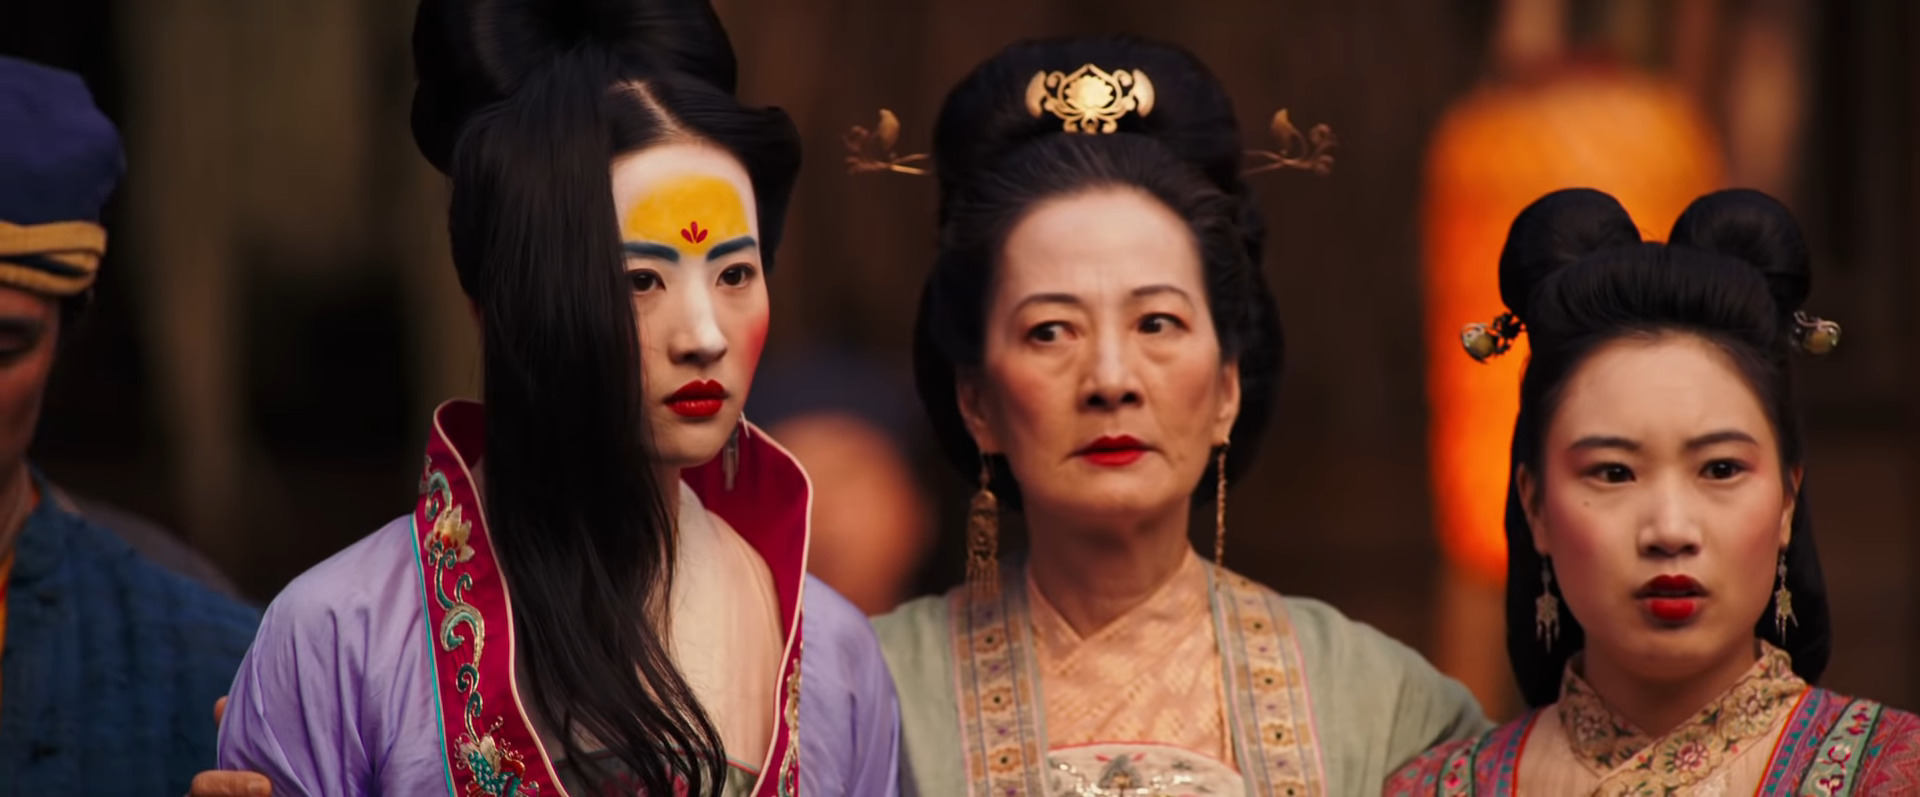 หนัง มู่หลาน 2020 Mulan หลิวอี้เฟย เป็นวีรสตรีแดนมังกร